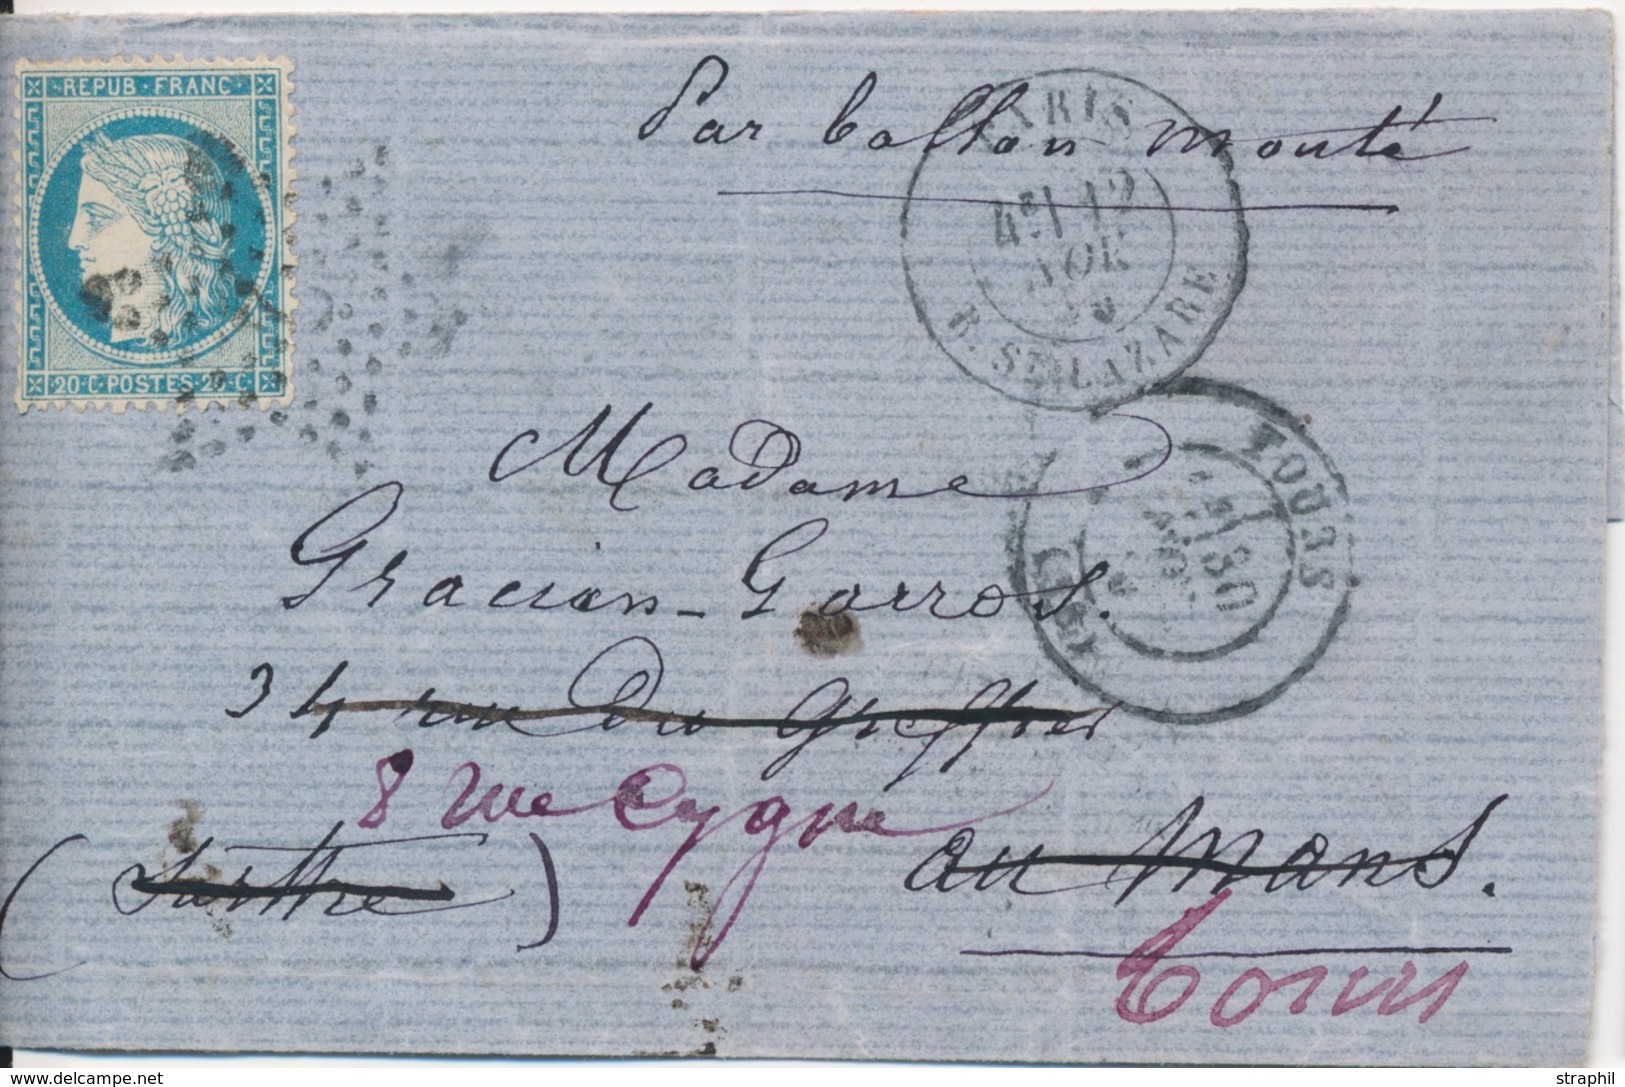 LAC BALLONS MONTES - LAC - Le GENERAL UHRICH - LMM Du 12.11.70 - Etoile 2 Sur N°37 - CaD Rare St Lazare - Arrivée LE MAN - War 1870